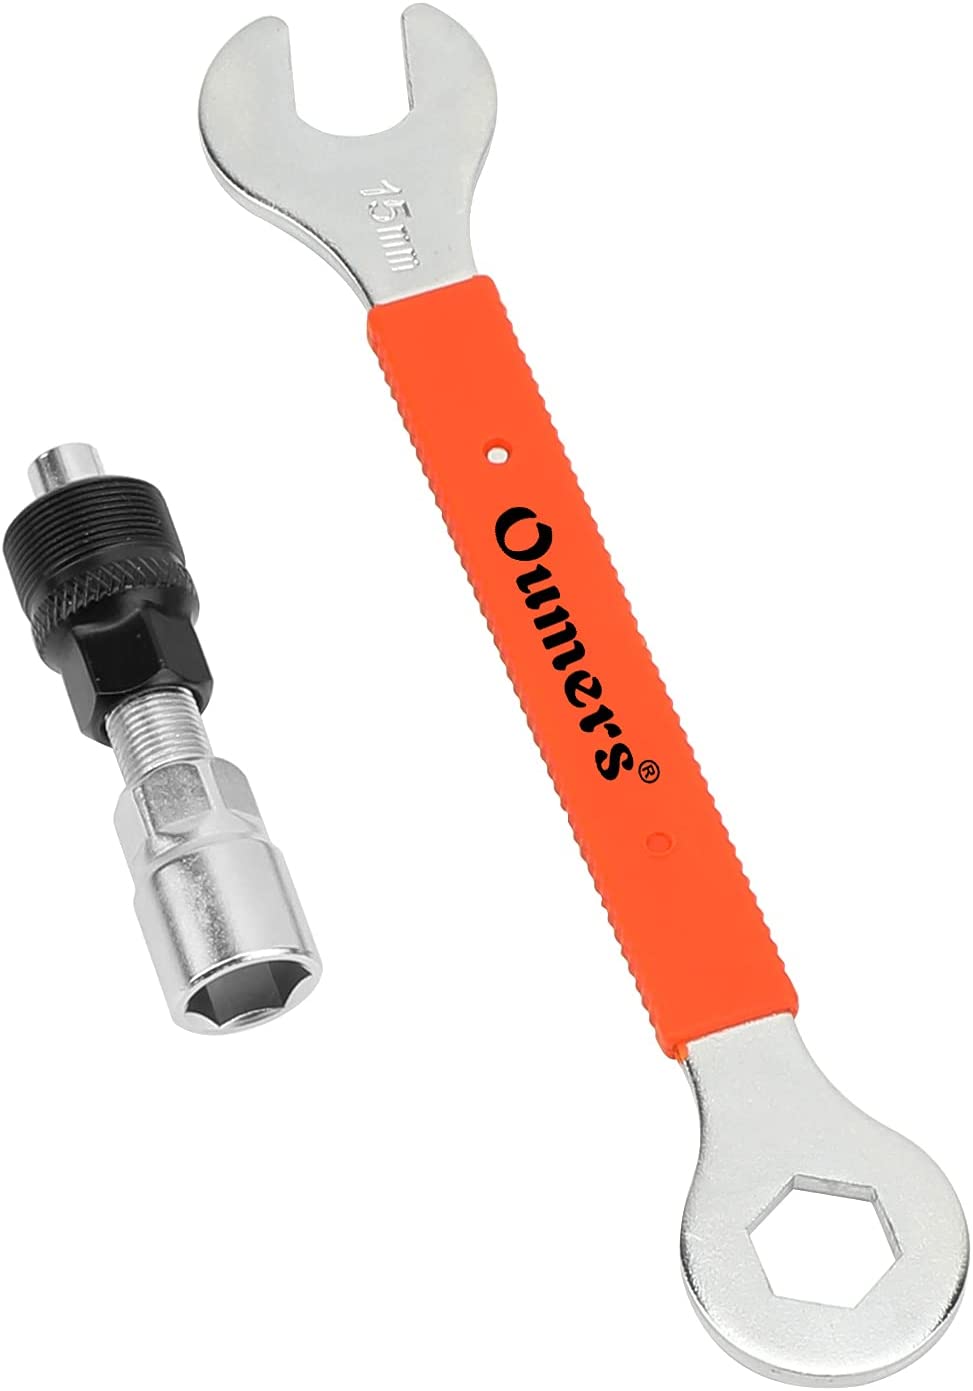 Bild zu Oumers Werkzeugschlüssel zum Entfernen der Fahrradkurbel für 5,99€